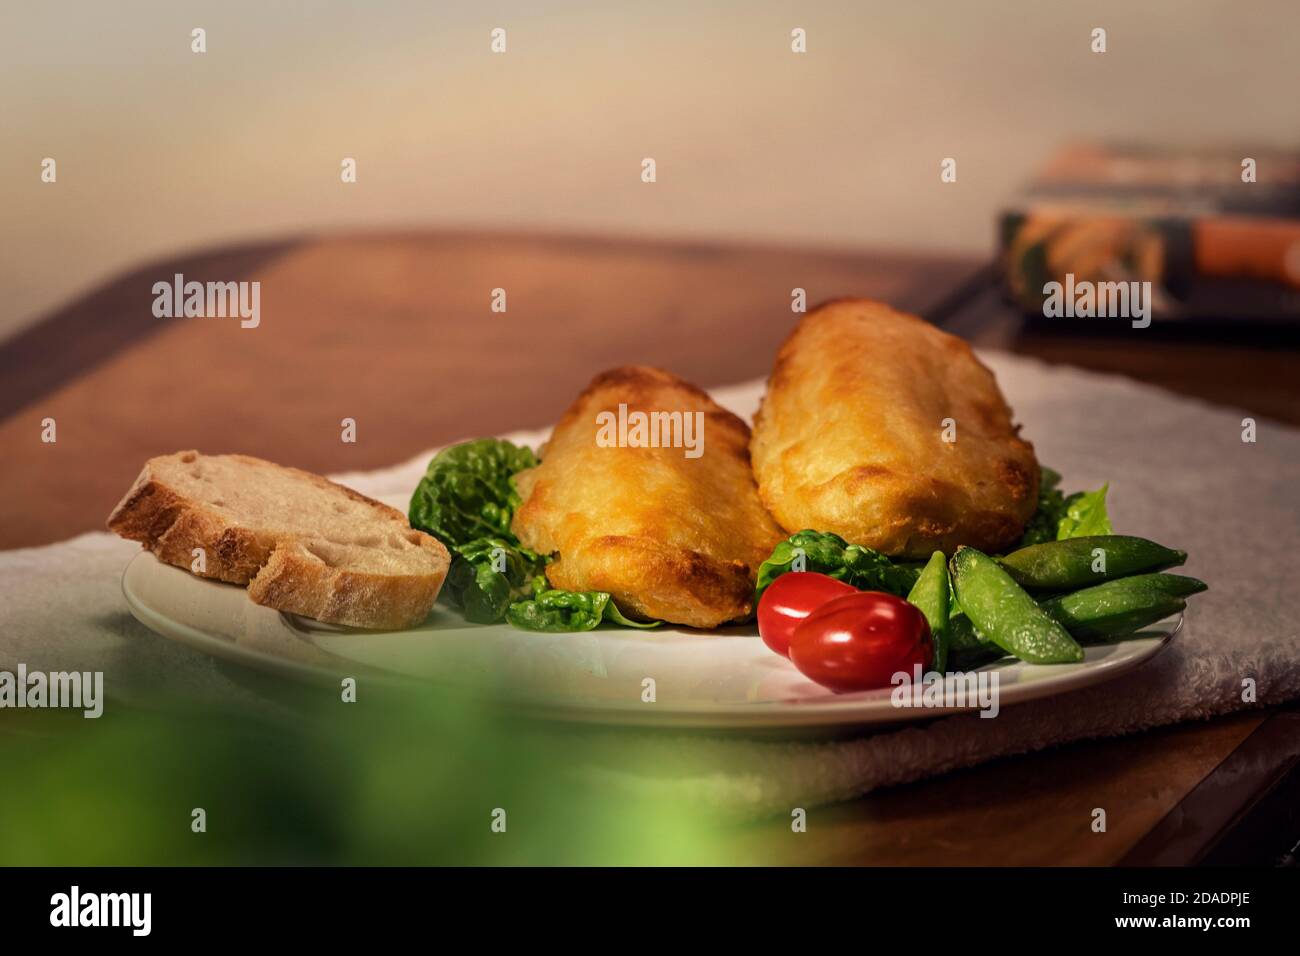 Due filetti croccanti senza carne di Quorn con insalata su un piatto con pacchetto di Quorn sullo sfondo. Foto Stock